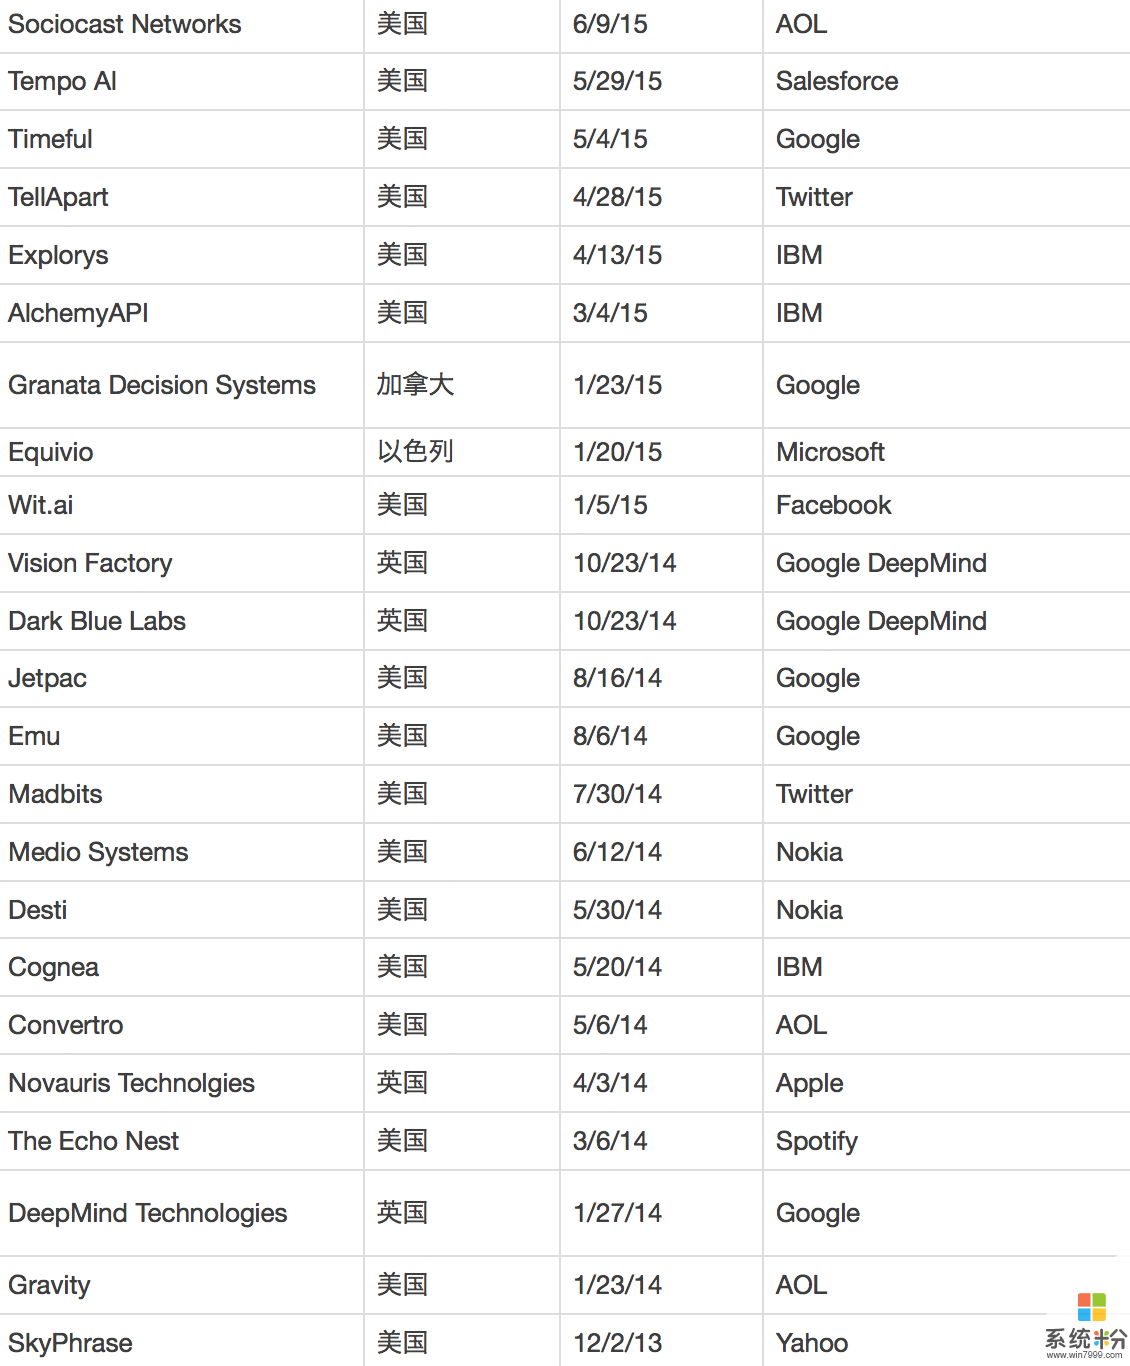 谷歌、苹果、英特尔、微软......谁收购的AI公司最多?(6)